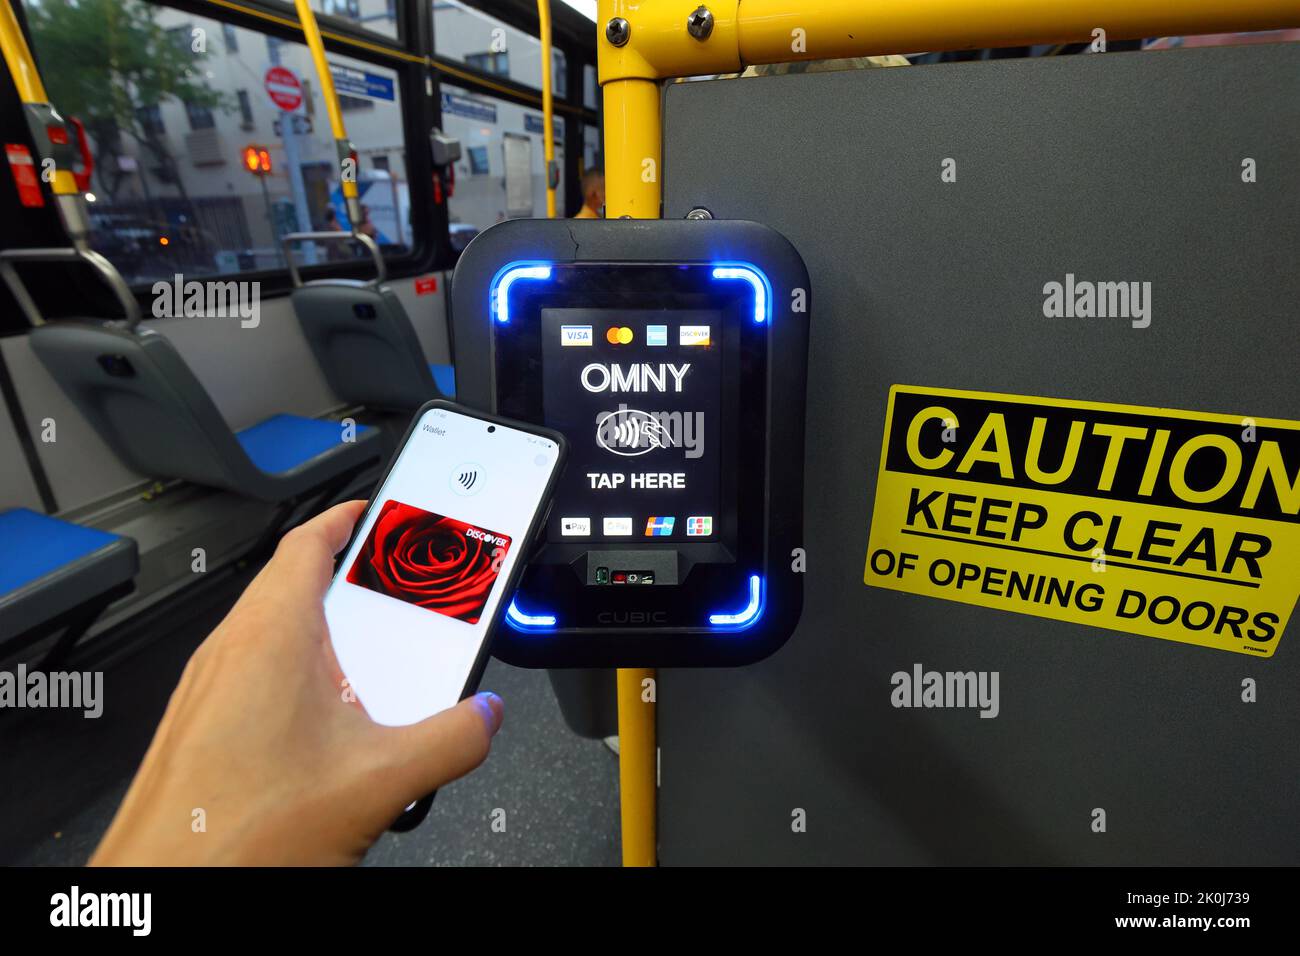 Ein NFC-fähiges Smartphone mit Google Wallet tippt auf einem NYC Transit-Bus auf einen OMNY kontaktlosen Bezahlleser. Stockfoto